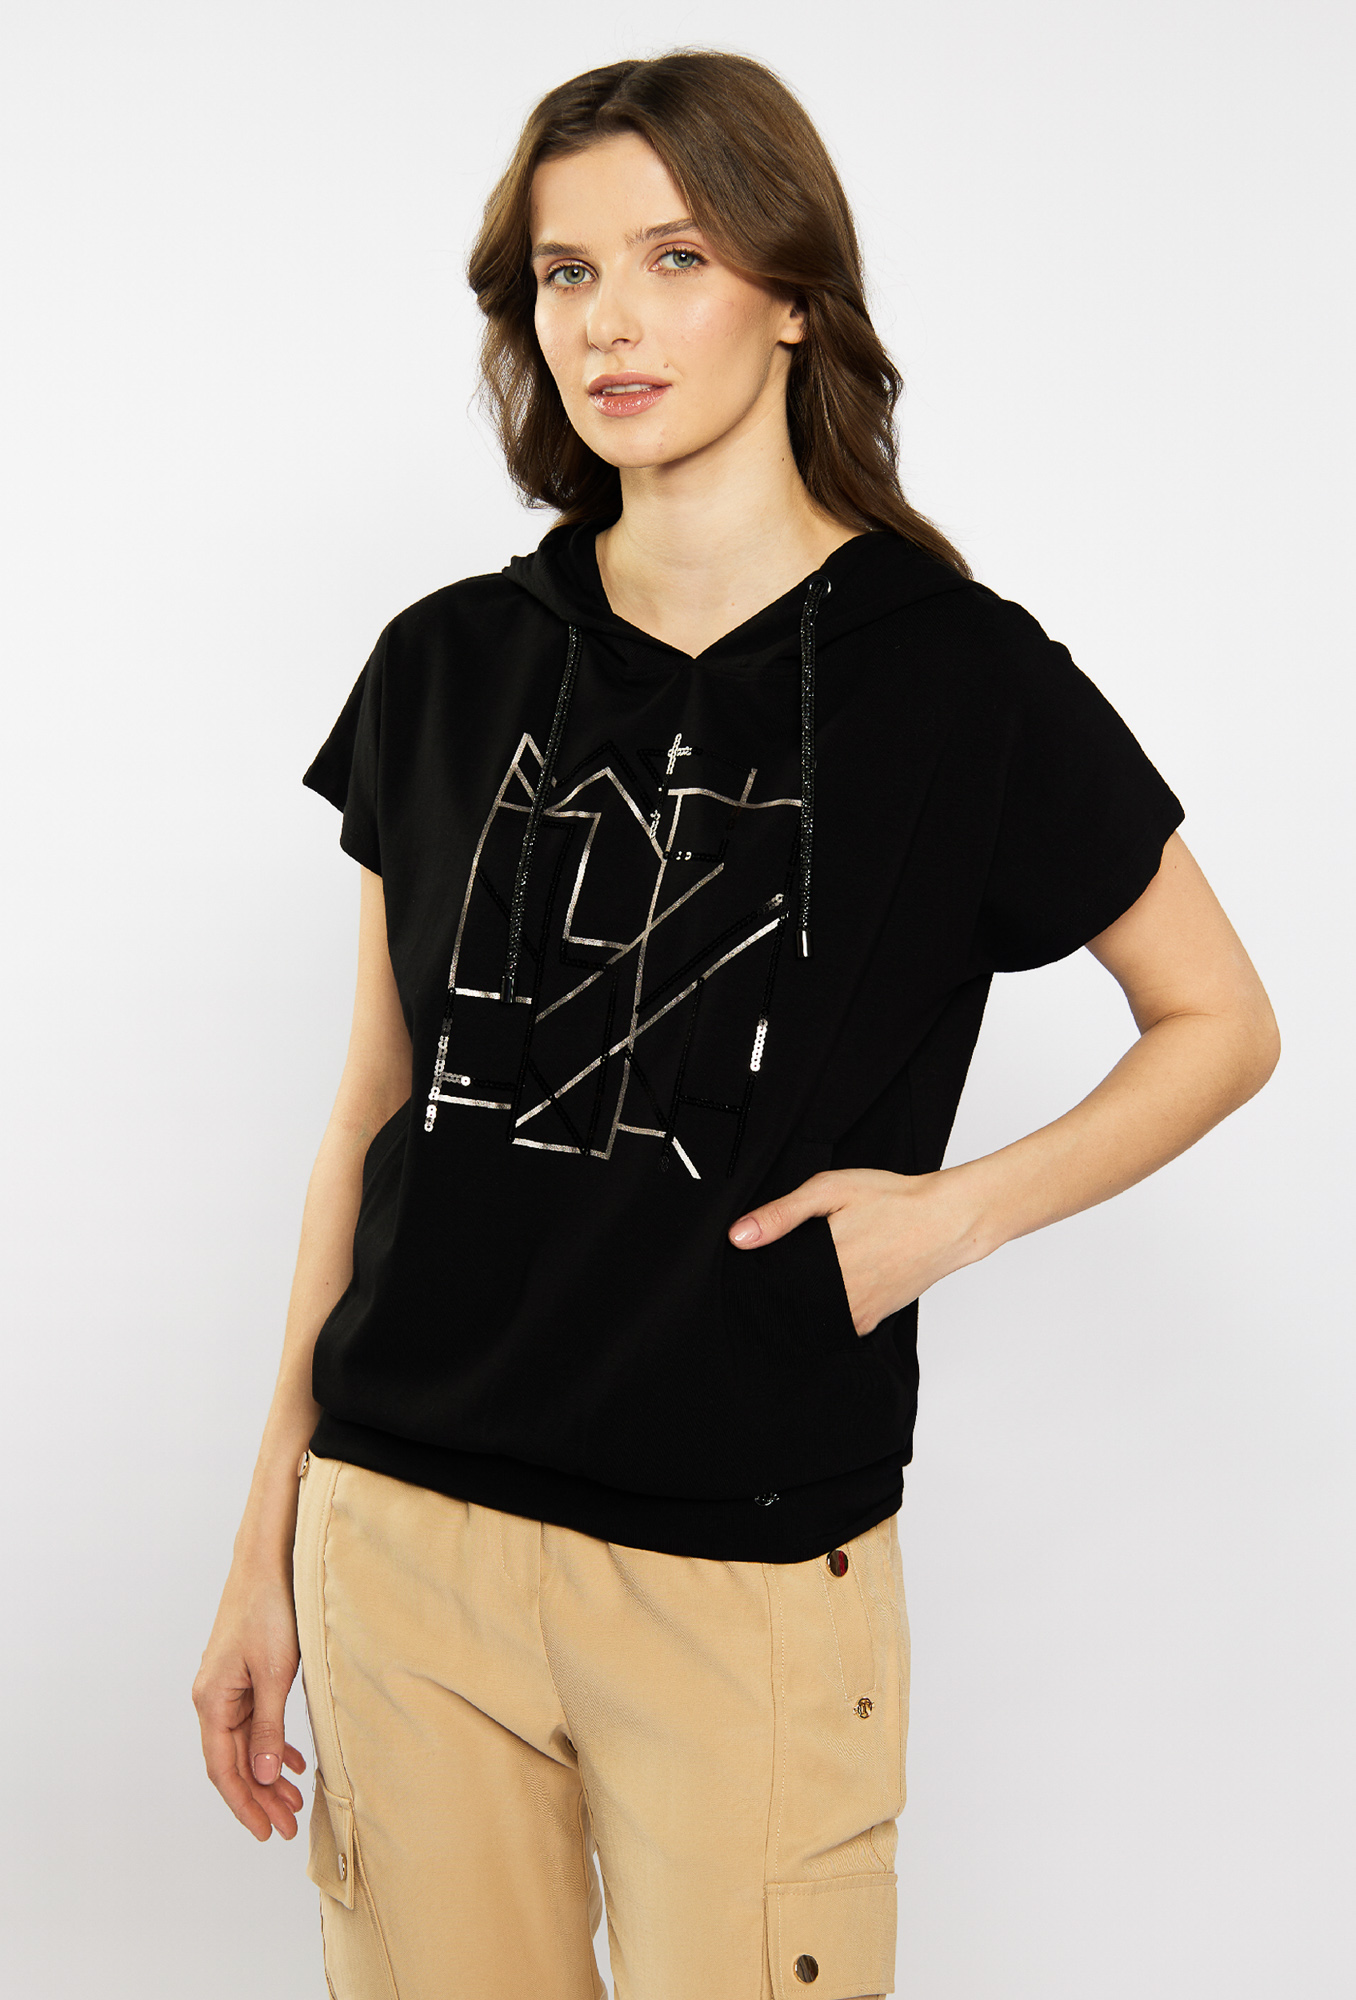 MONNARI Woman's T-Shirts Ladies' T-Shirt With Hood